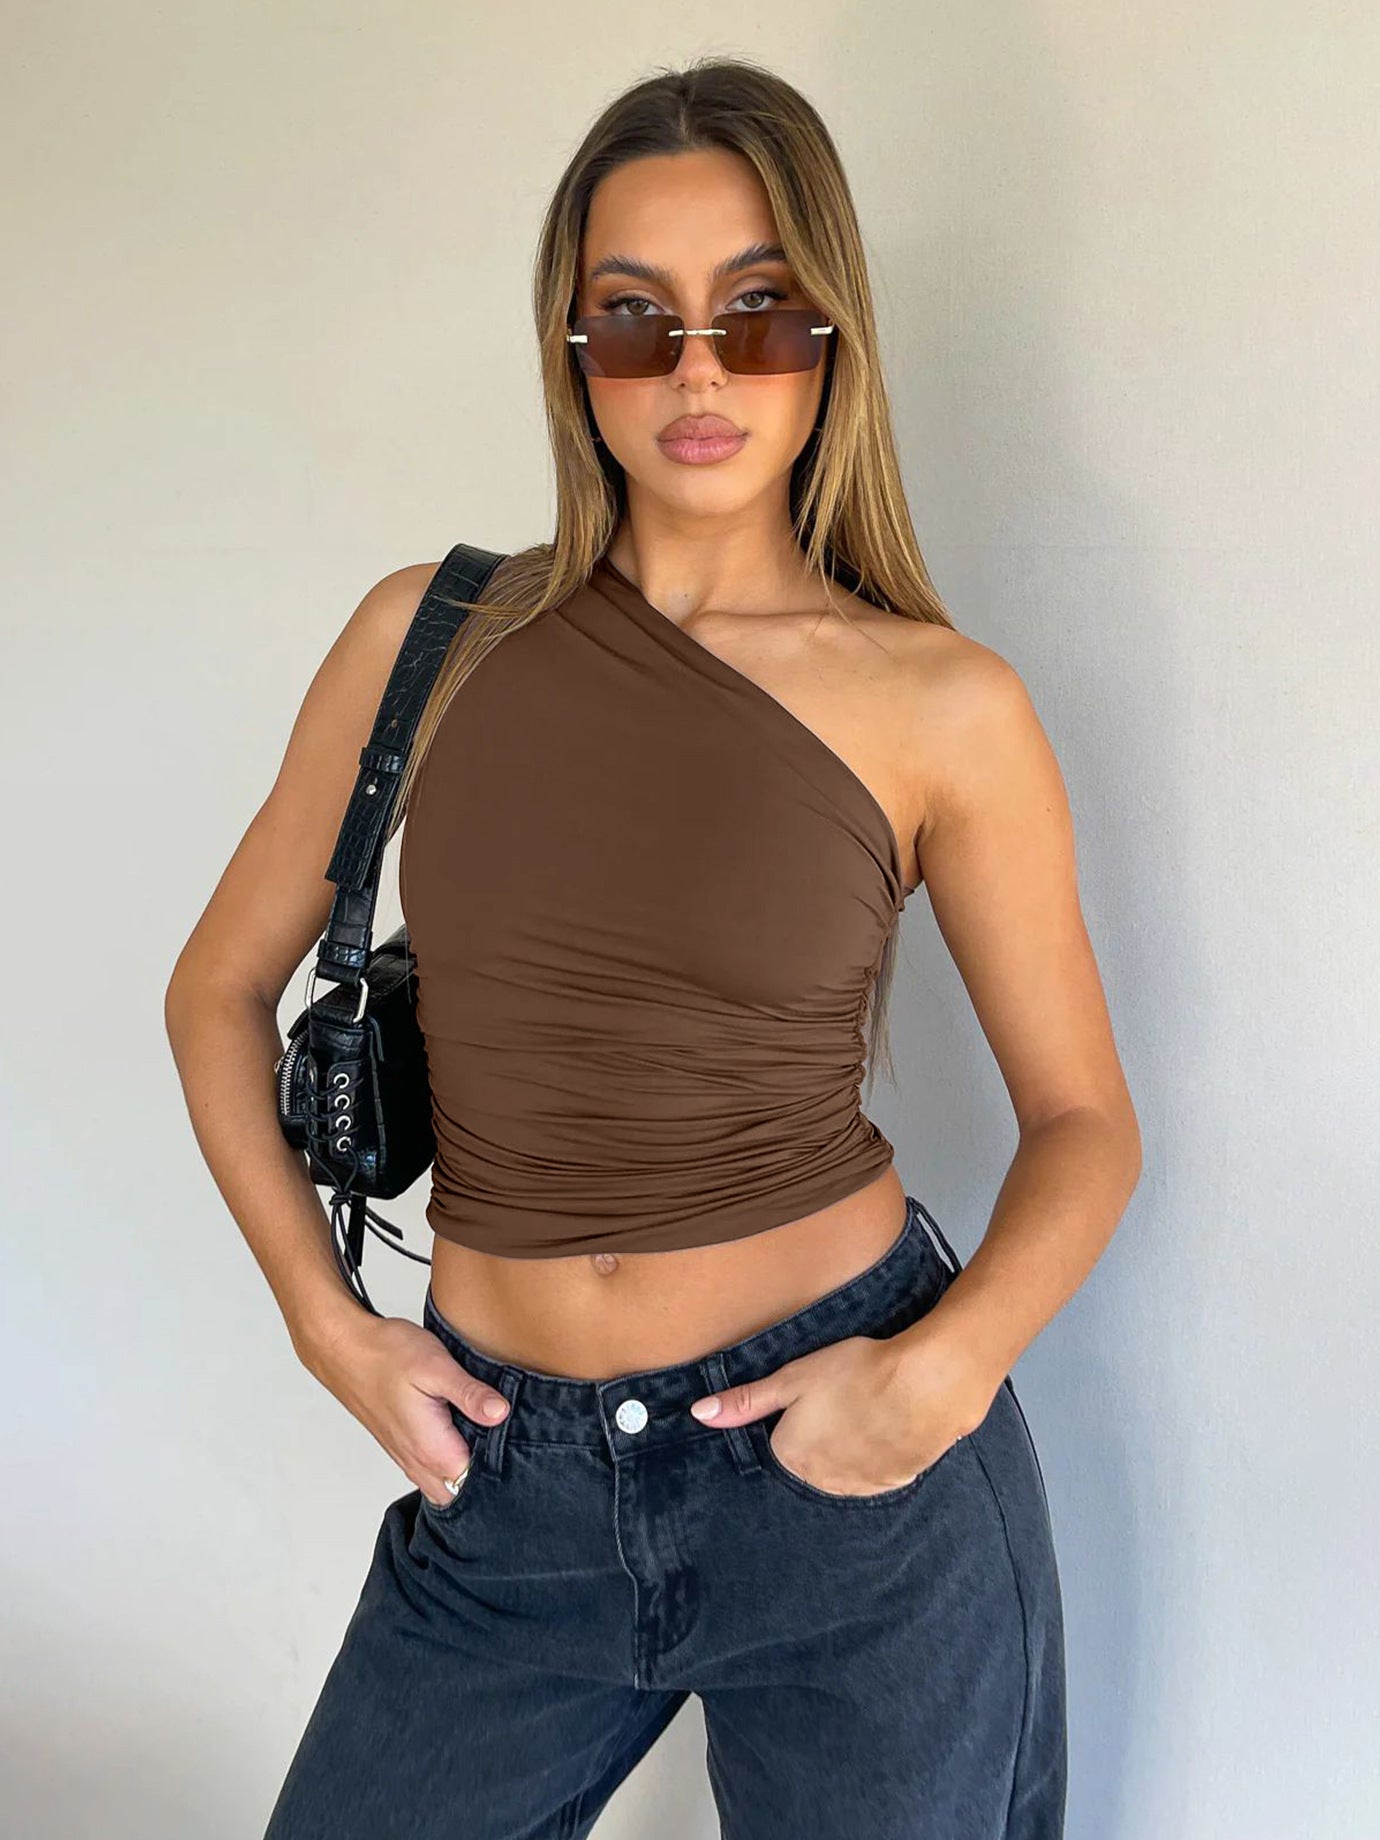 Women's Hot Shoulder Sleeveless Sexy T-shirt Design Blouses